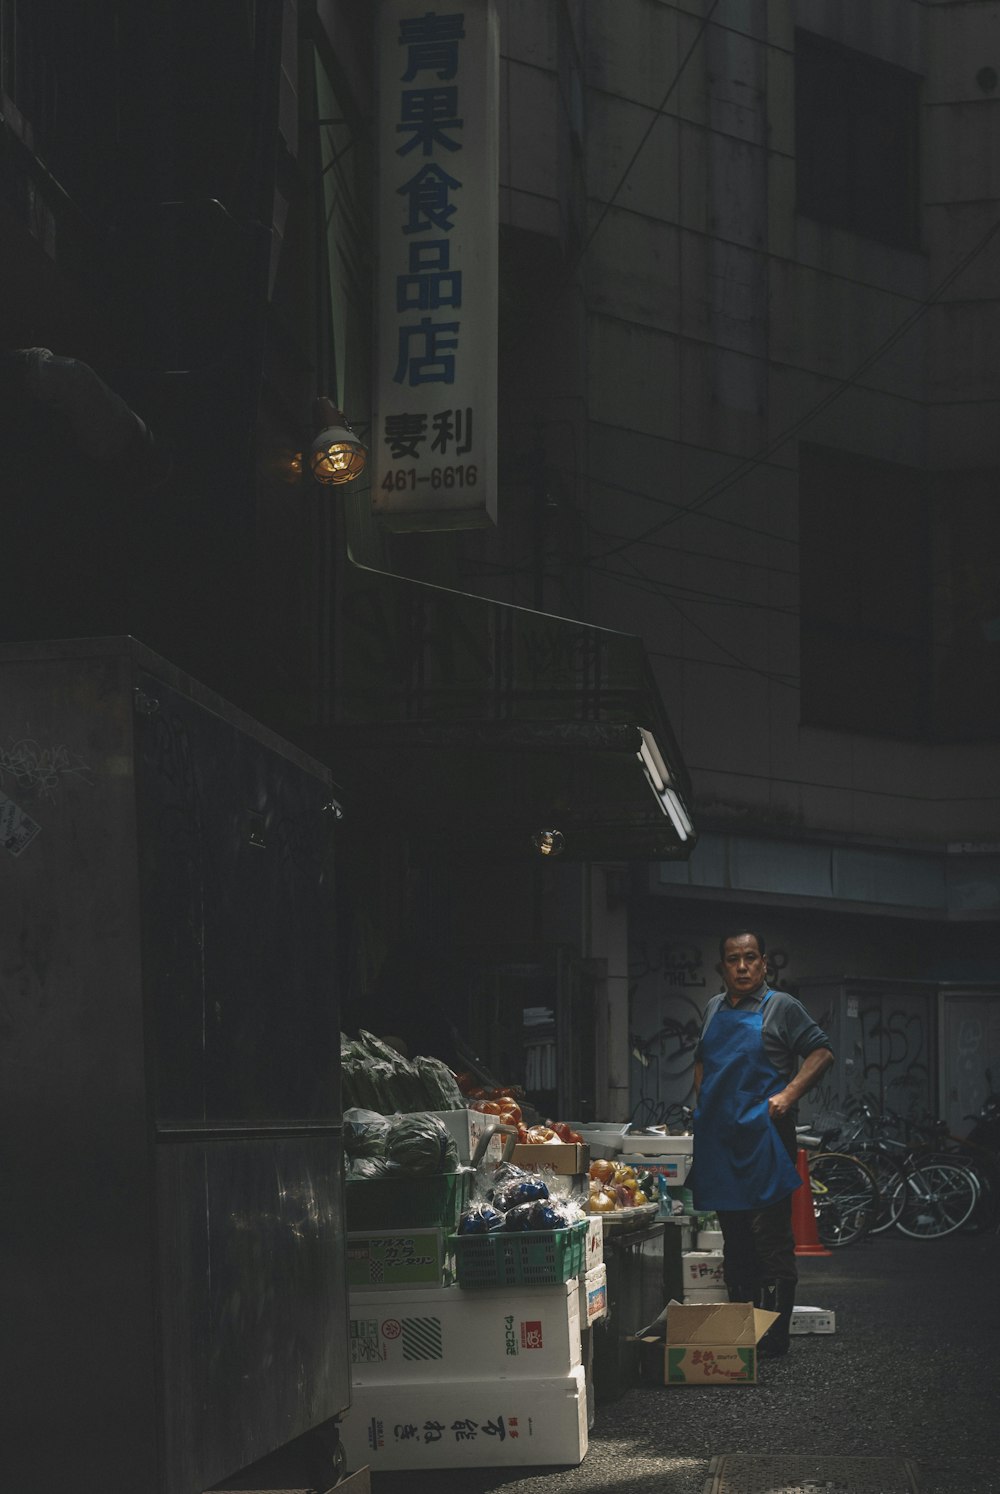 Hombre con camiseta roja y jeans de mezclilla azul parado cerca del puesto de comida durante la noche